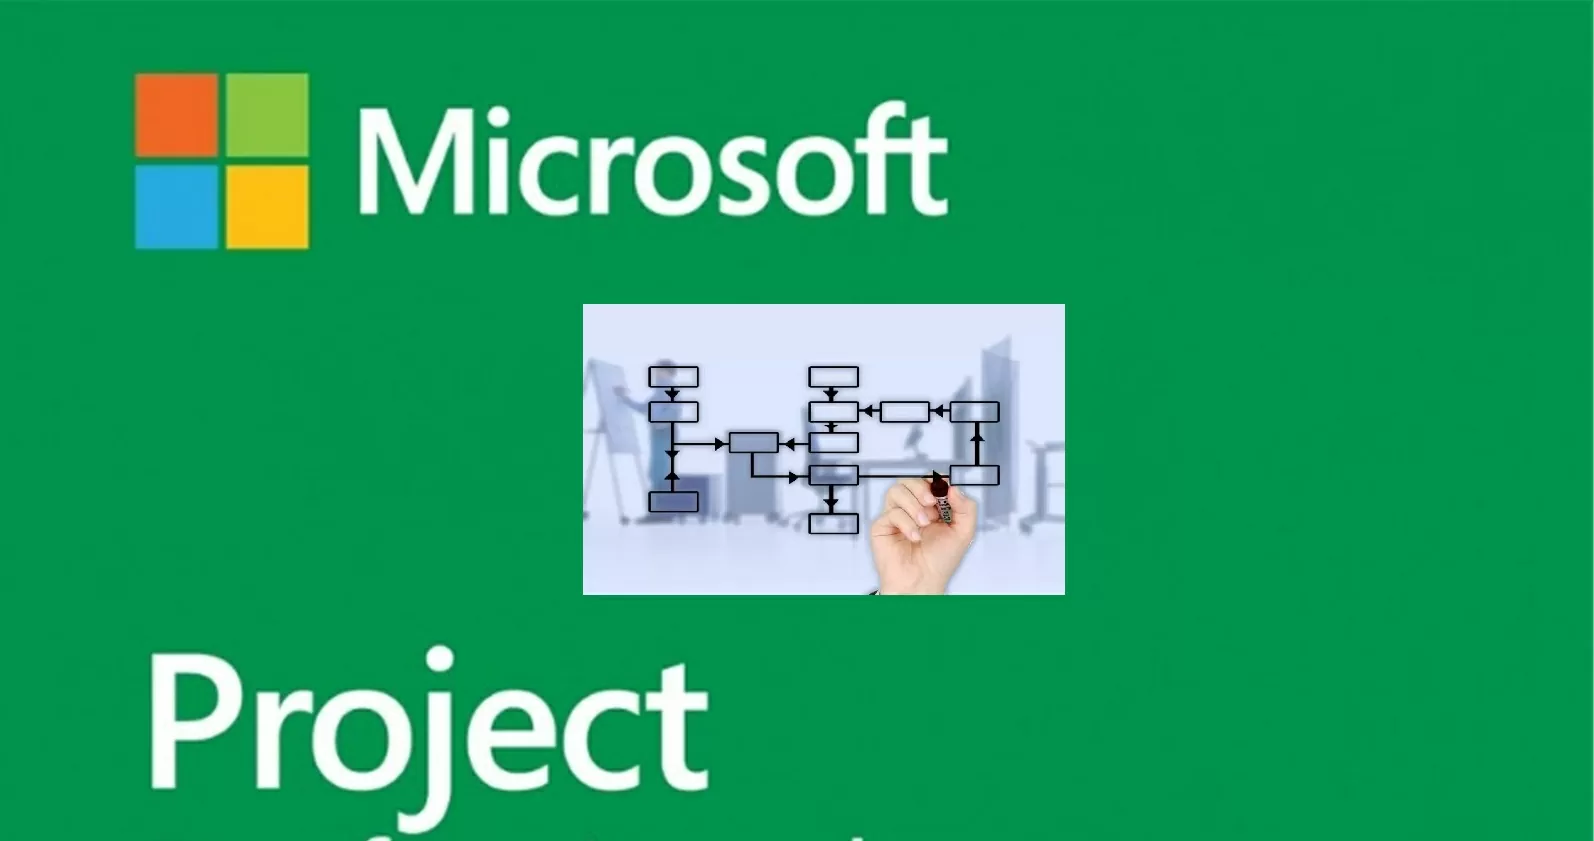 Jaki jest rodzaj działania i jak skonfigurować automatyczne planowanie w Microsoft Project